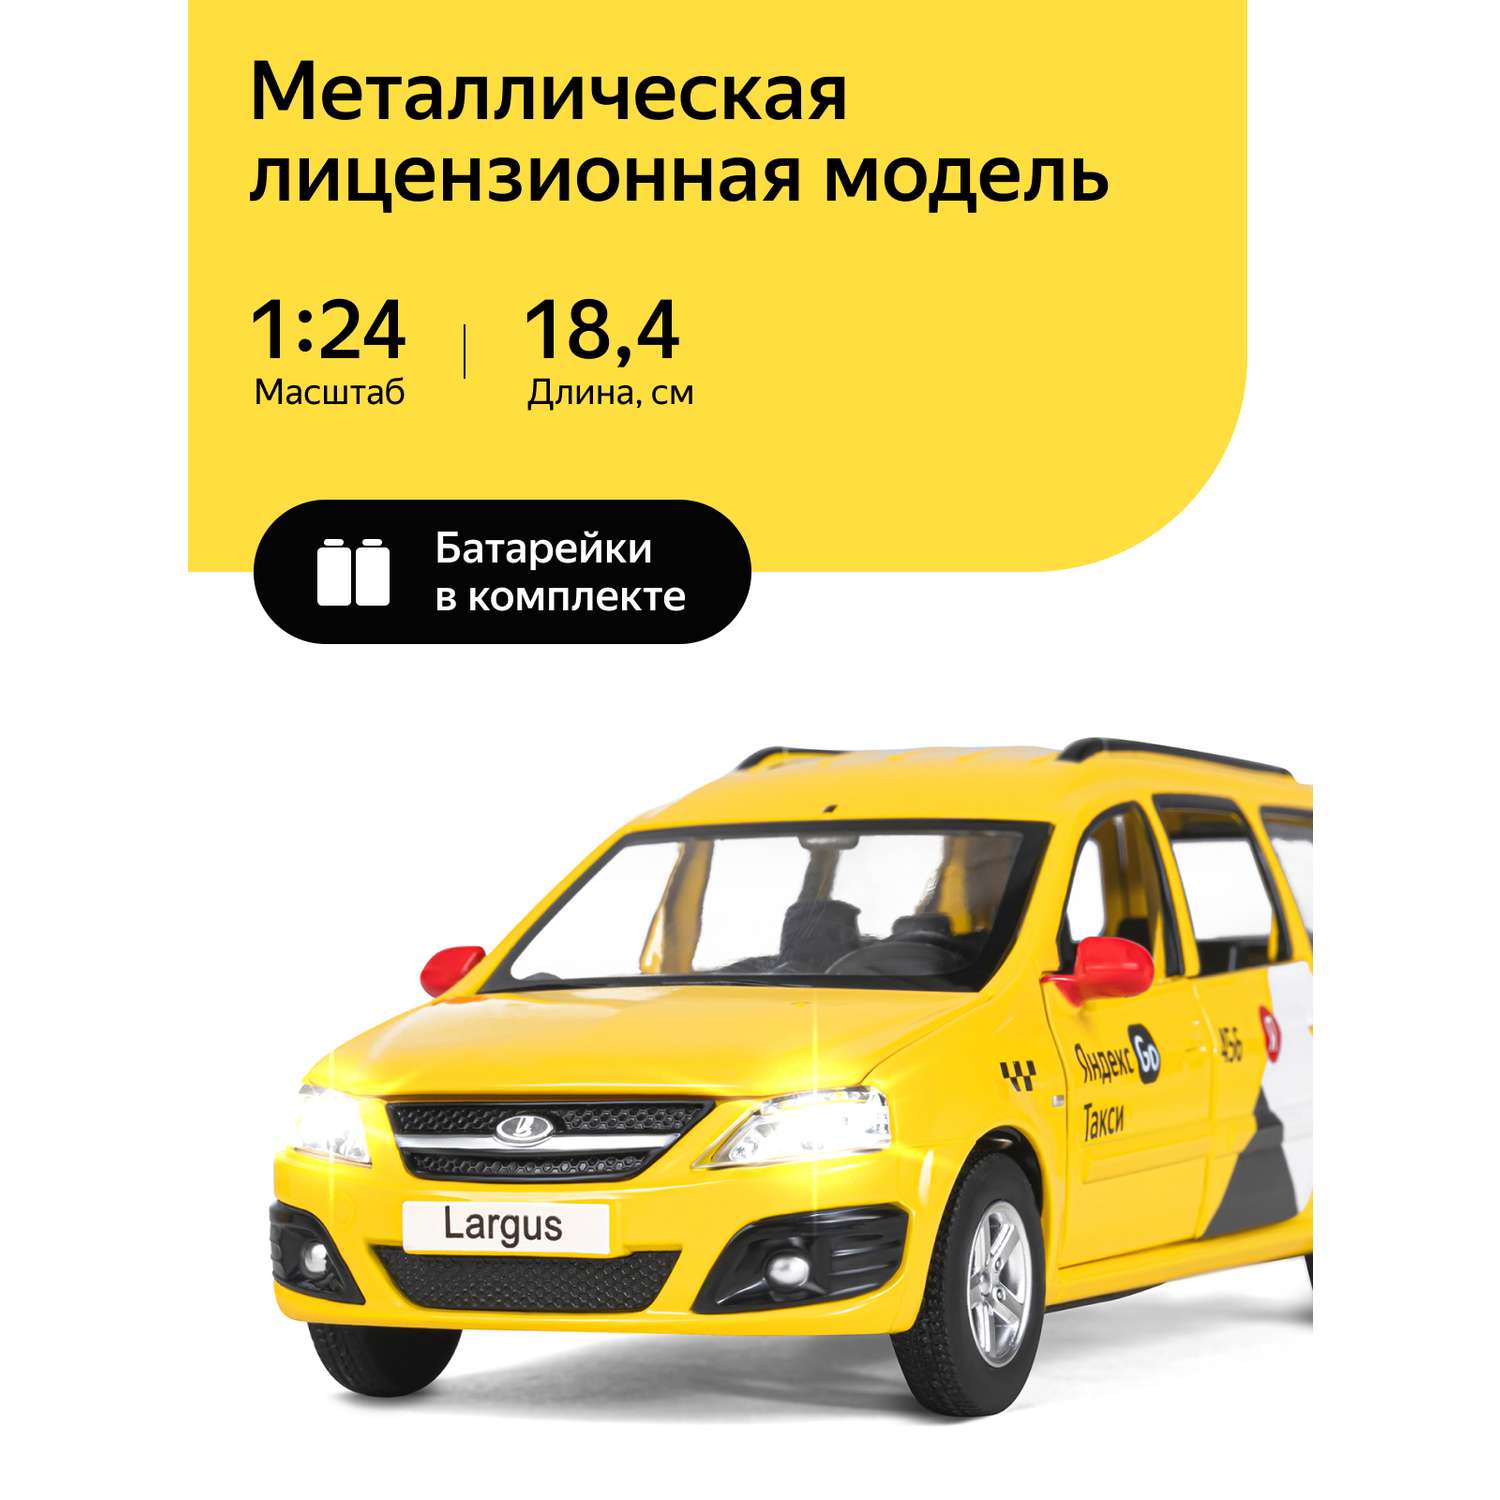 Машинка металлическая Яндекс GO игрушка детская LADA LARGUS 1:24 желтый Озвучено Алисой JB1251481 - фото 1